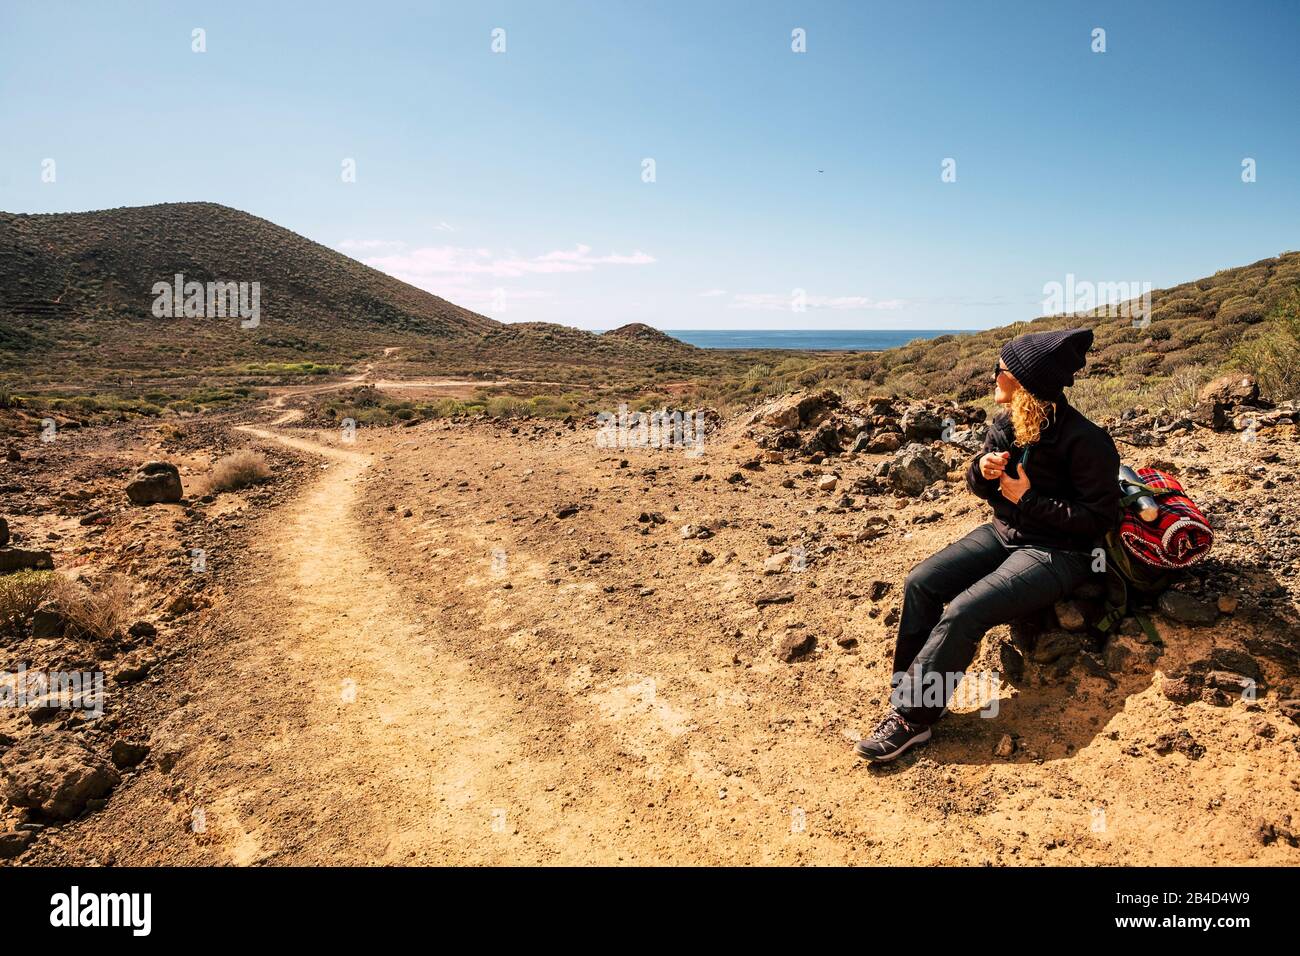 Donna attiva sedersi sulle rocce riposando durante un'attività di trekking in montagna - oceano e cielo in background, luogo panoramico per persone sano stile di vita Foto Stock